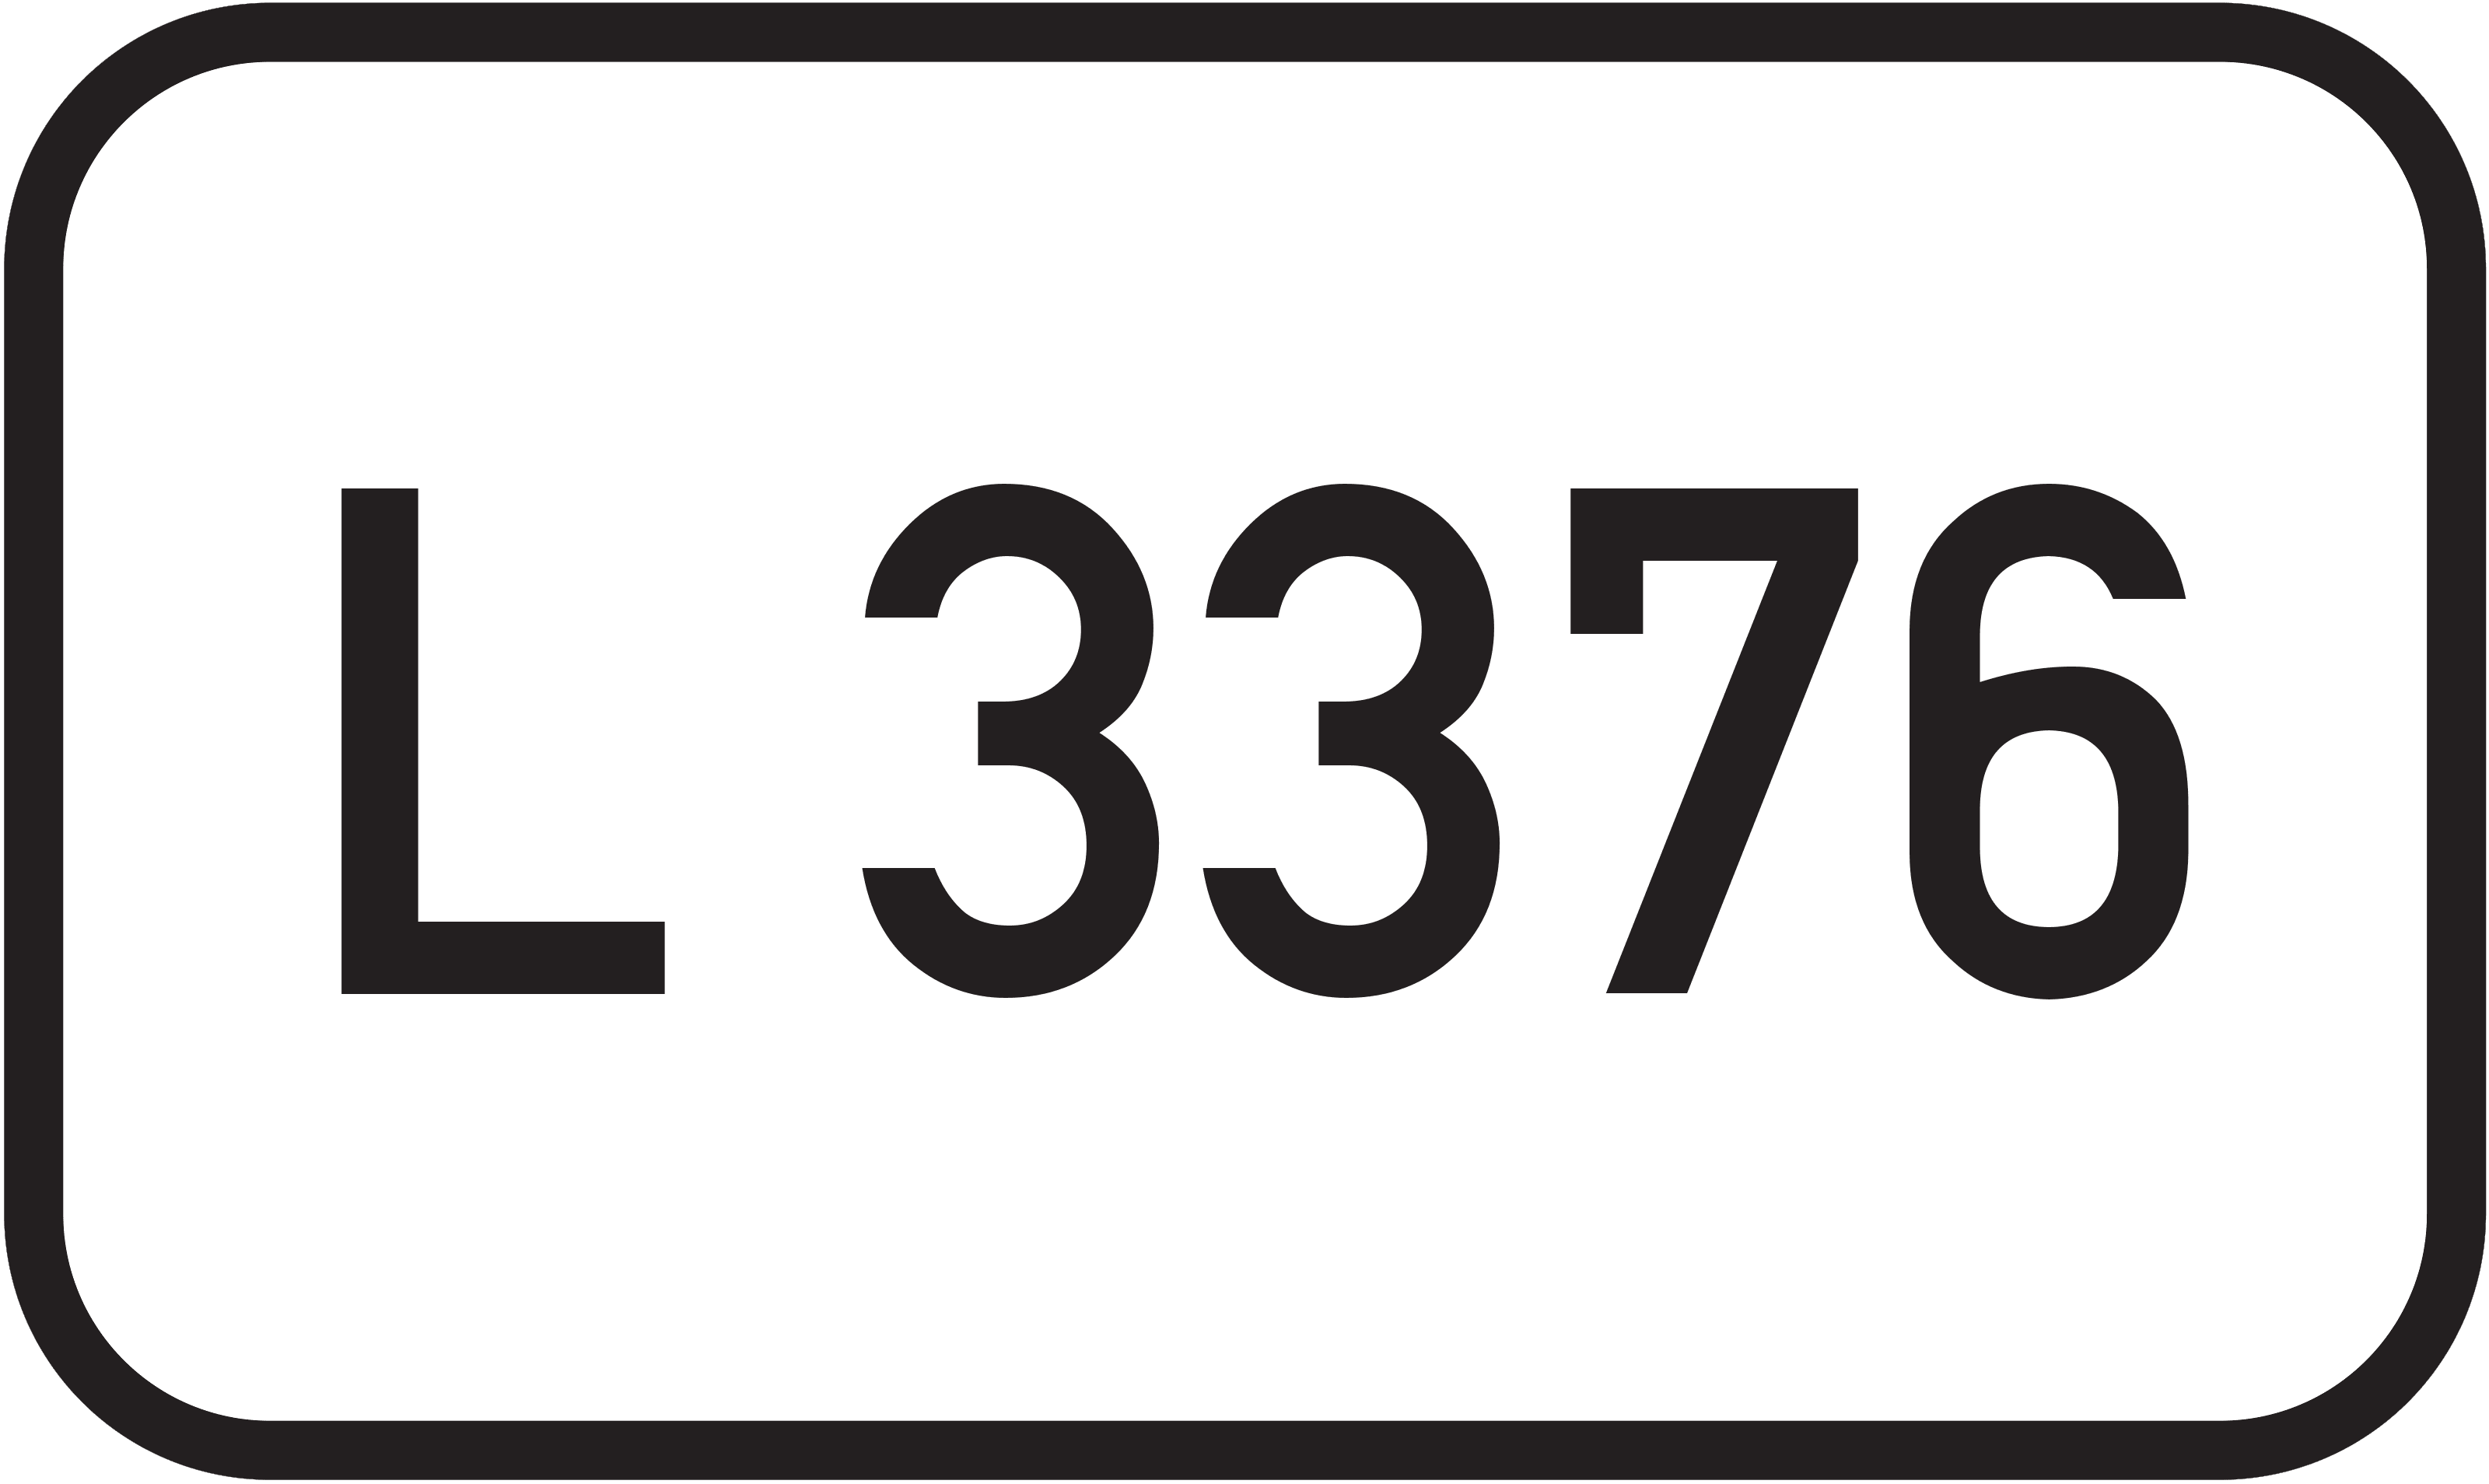 Landesstraße L 3376